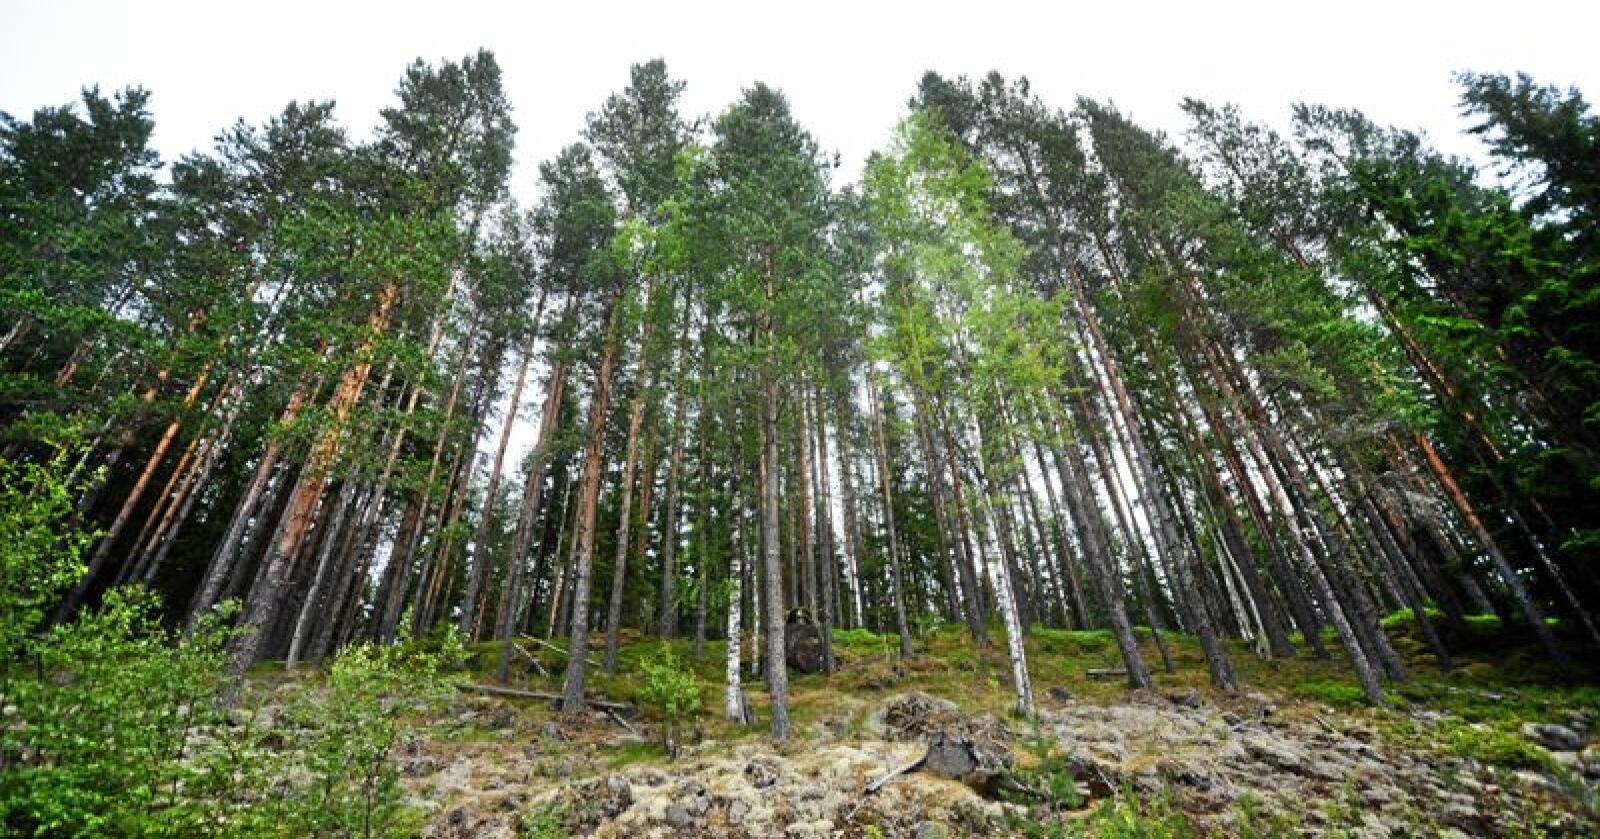 Regjeringen verner skog og tar et skritt nærmere målet om å verne ti prosent av skogarealet. Foto: Siri Juell Rasmussen